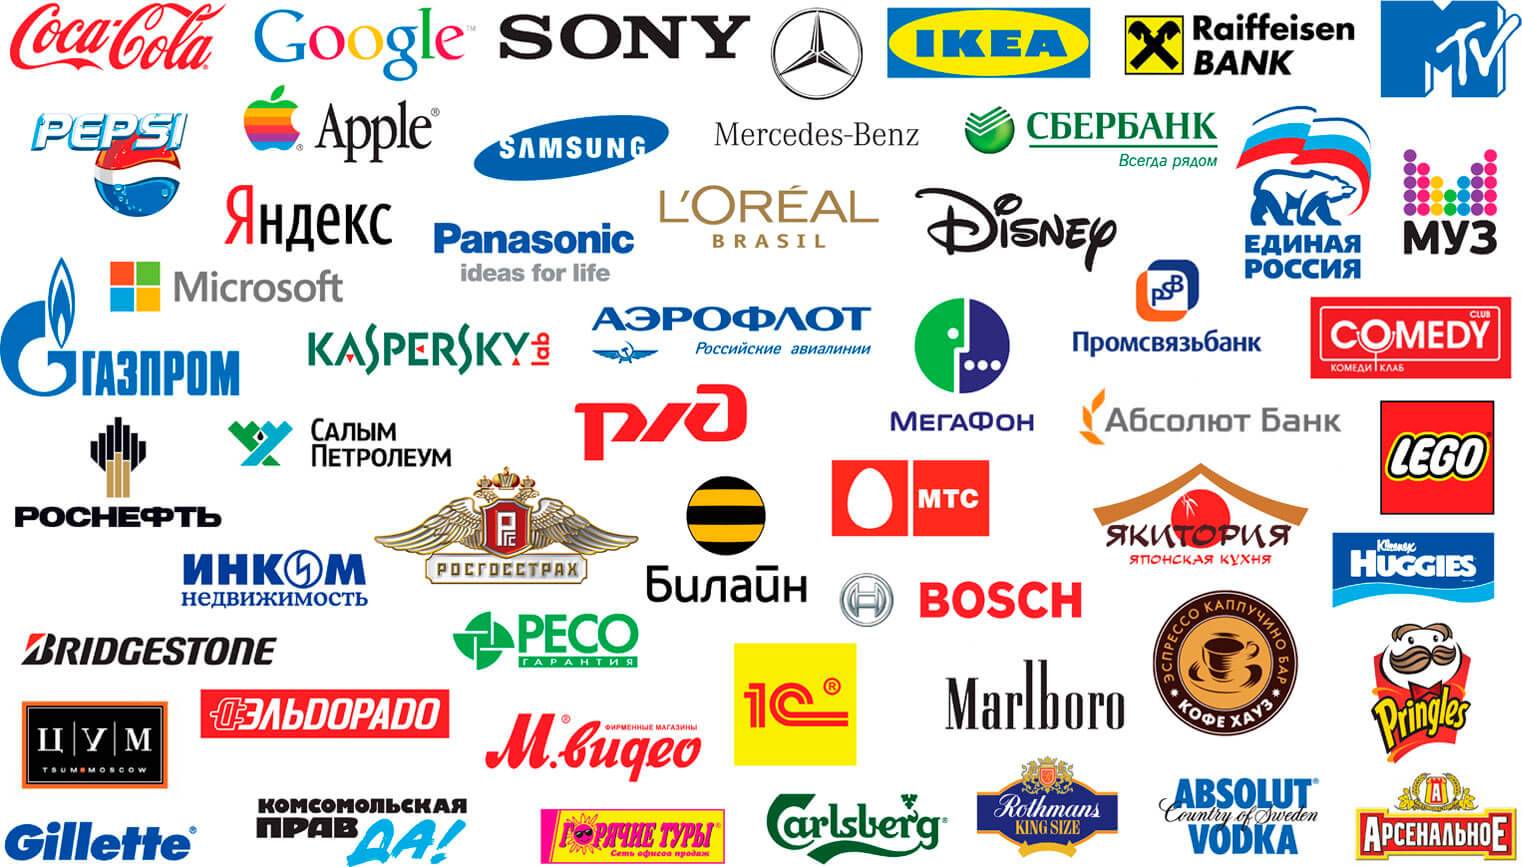 Секрет фирмы: 36 смыслов, которые скрыты в логотипах известных брендов